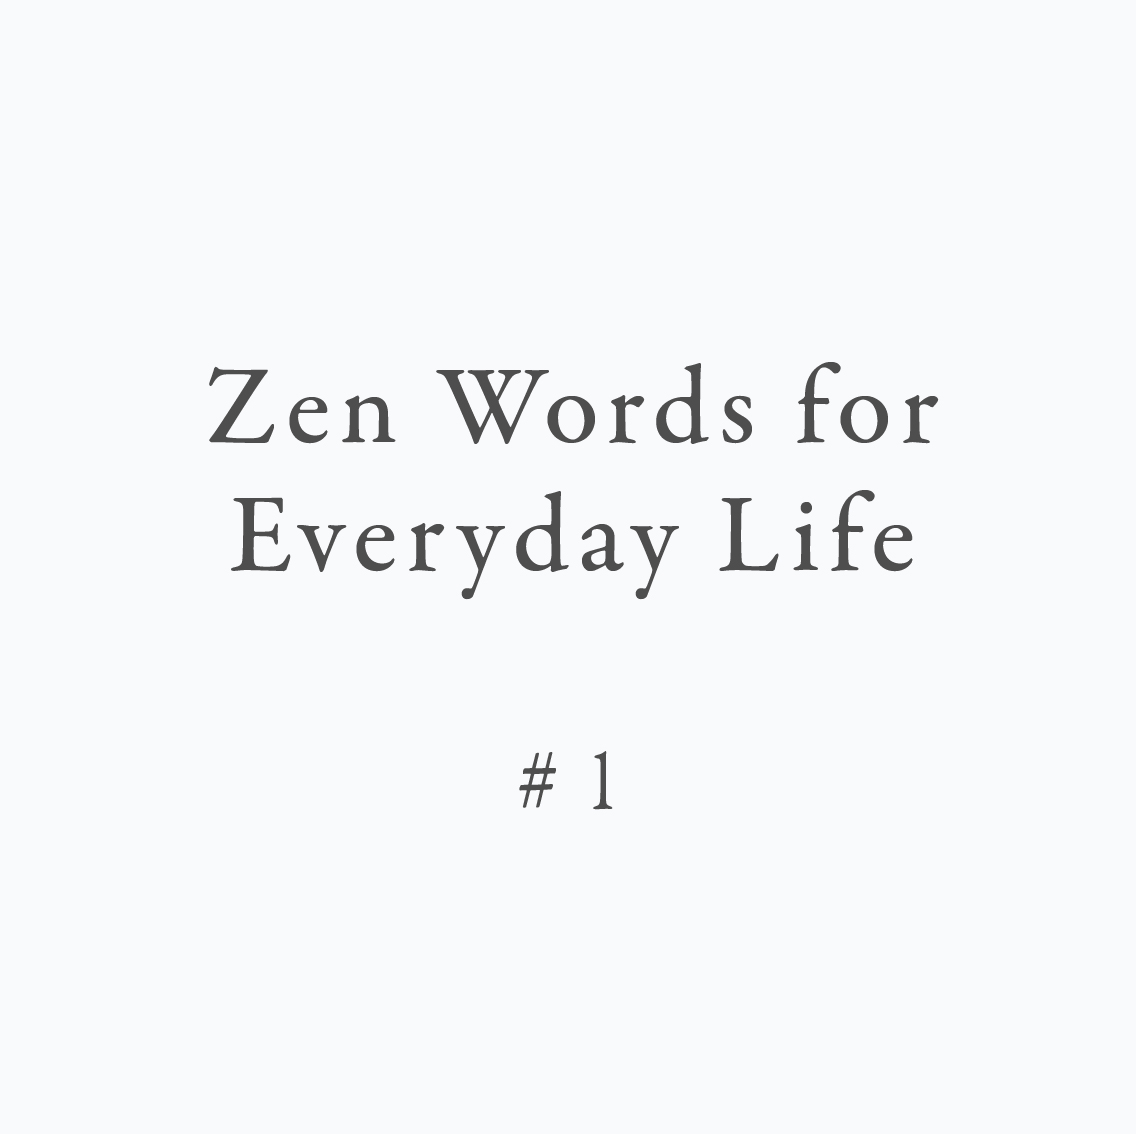 Zen Words for Everyday Life